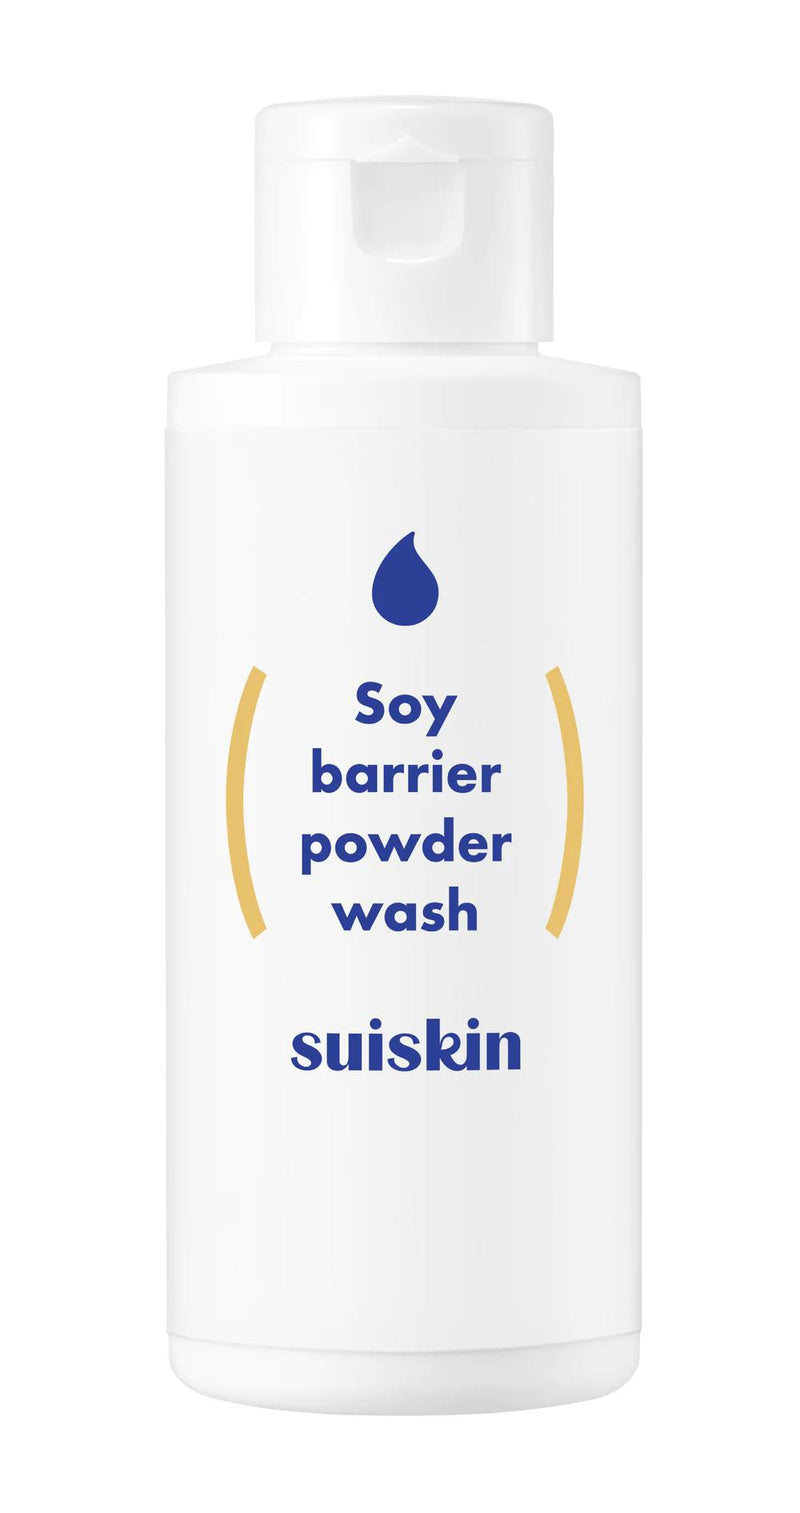 [SUISKIN] Soy barrier powder wash - 50g-Luxiface